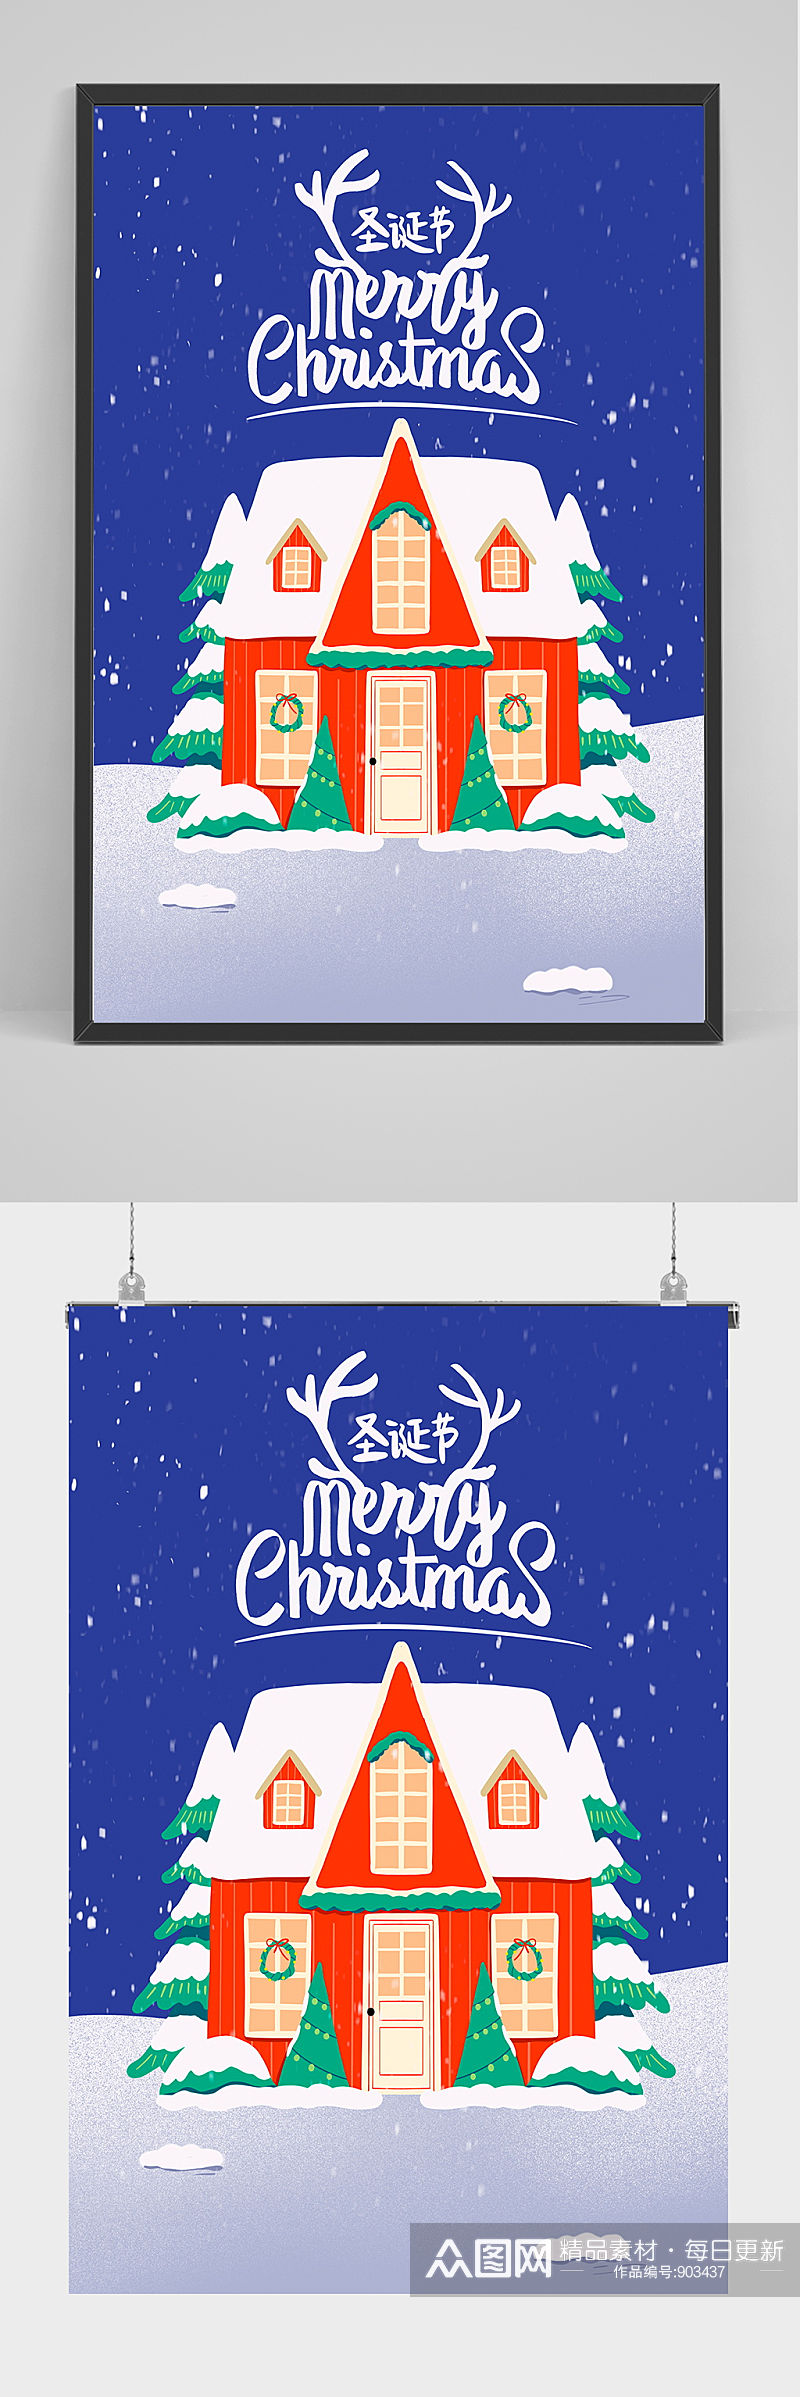 圣诞节海报节日插画卡通下雪圣诞树手写字素材